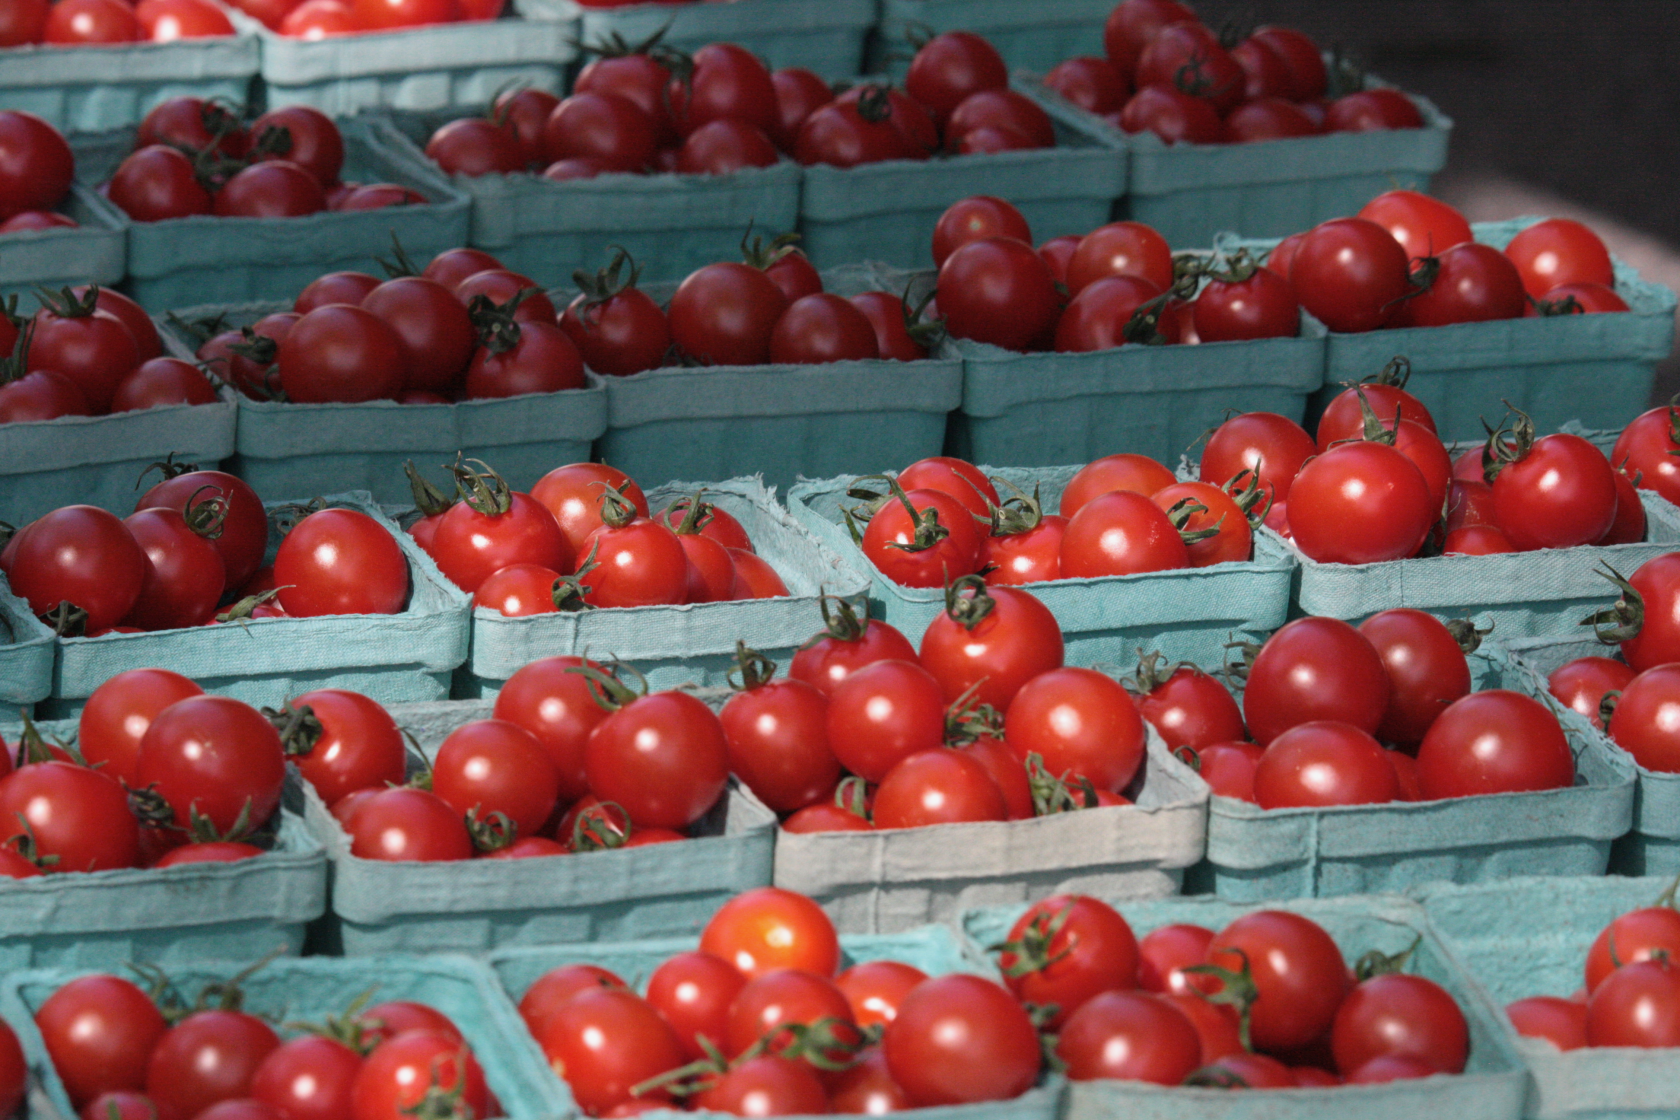 Portland Farmer's Market at Deering Oaks - Cherry Tomatoes